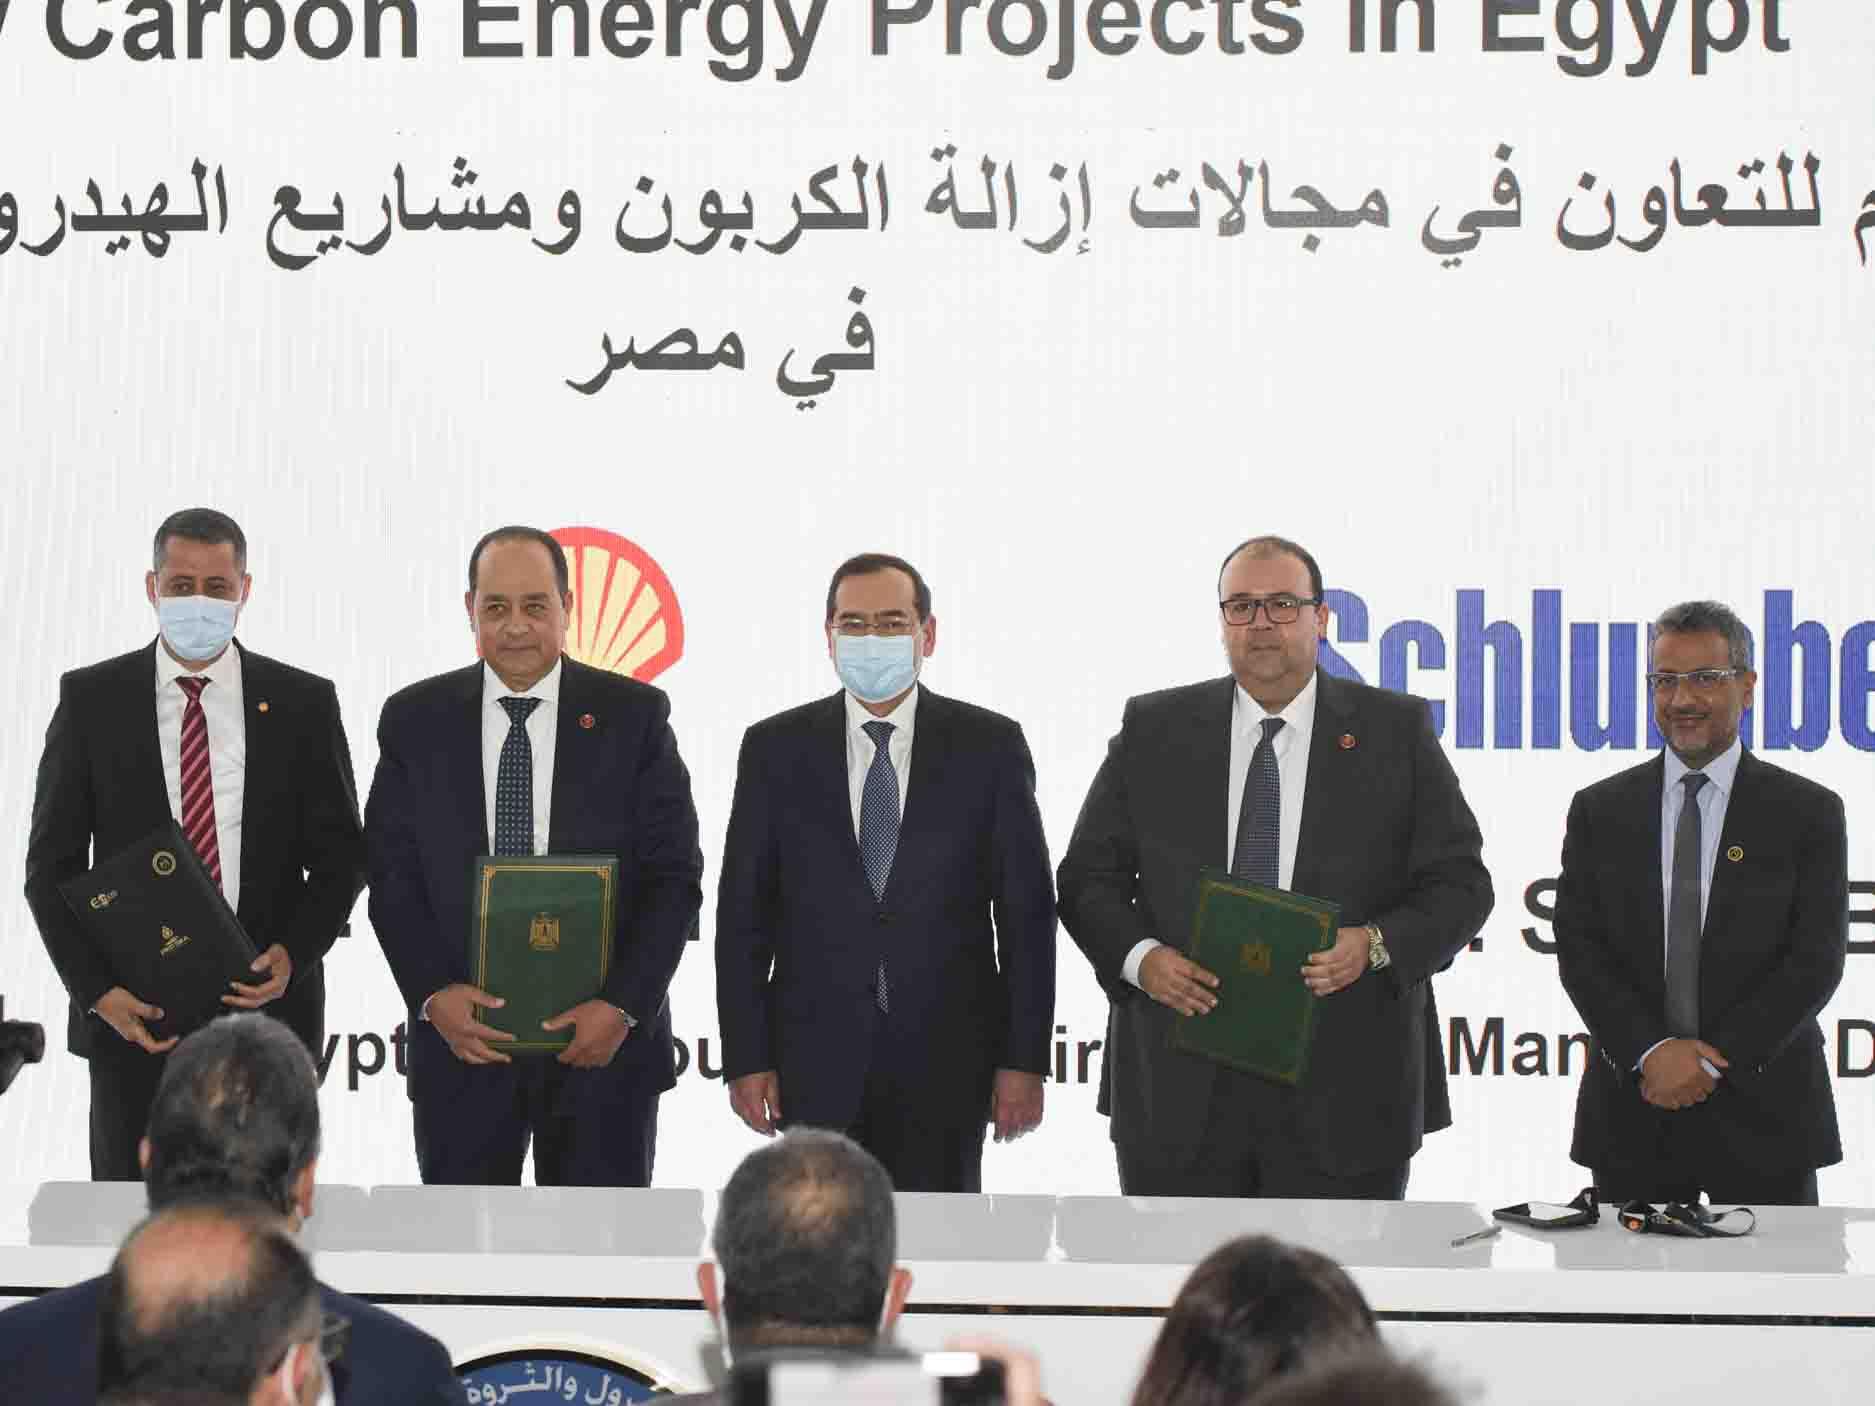 شل تتعاون مع إيجاس وشلمبرجير لإزالة الكربون في مصر